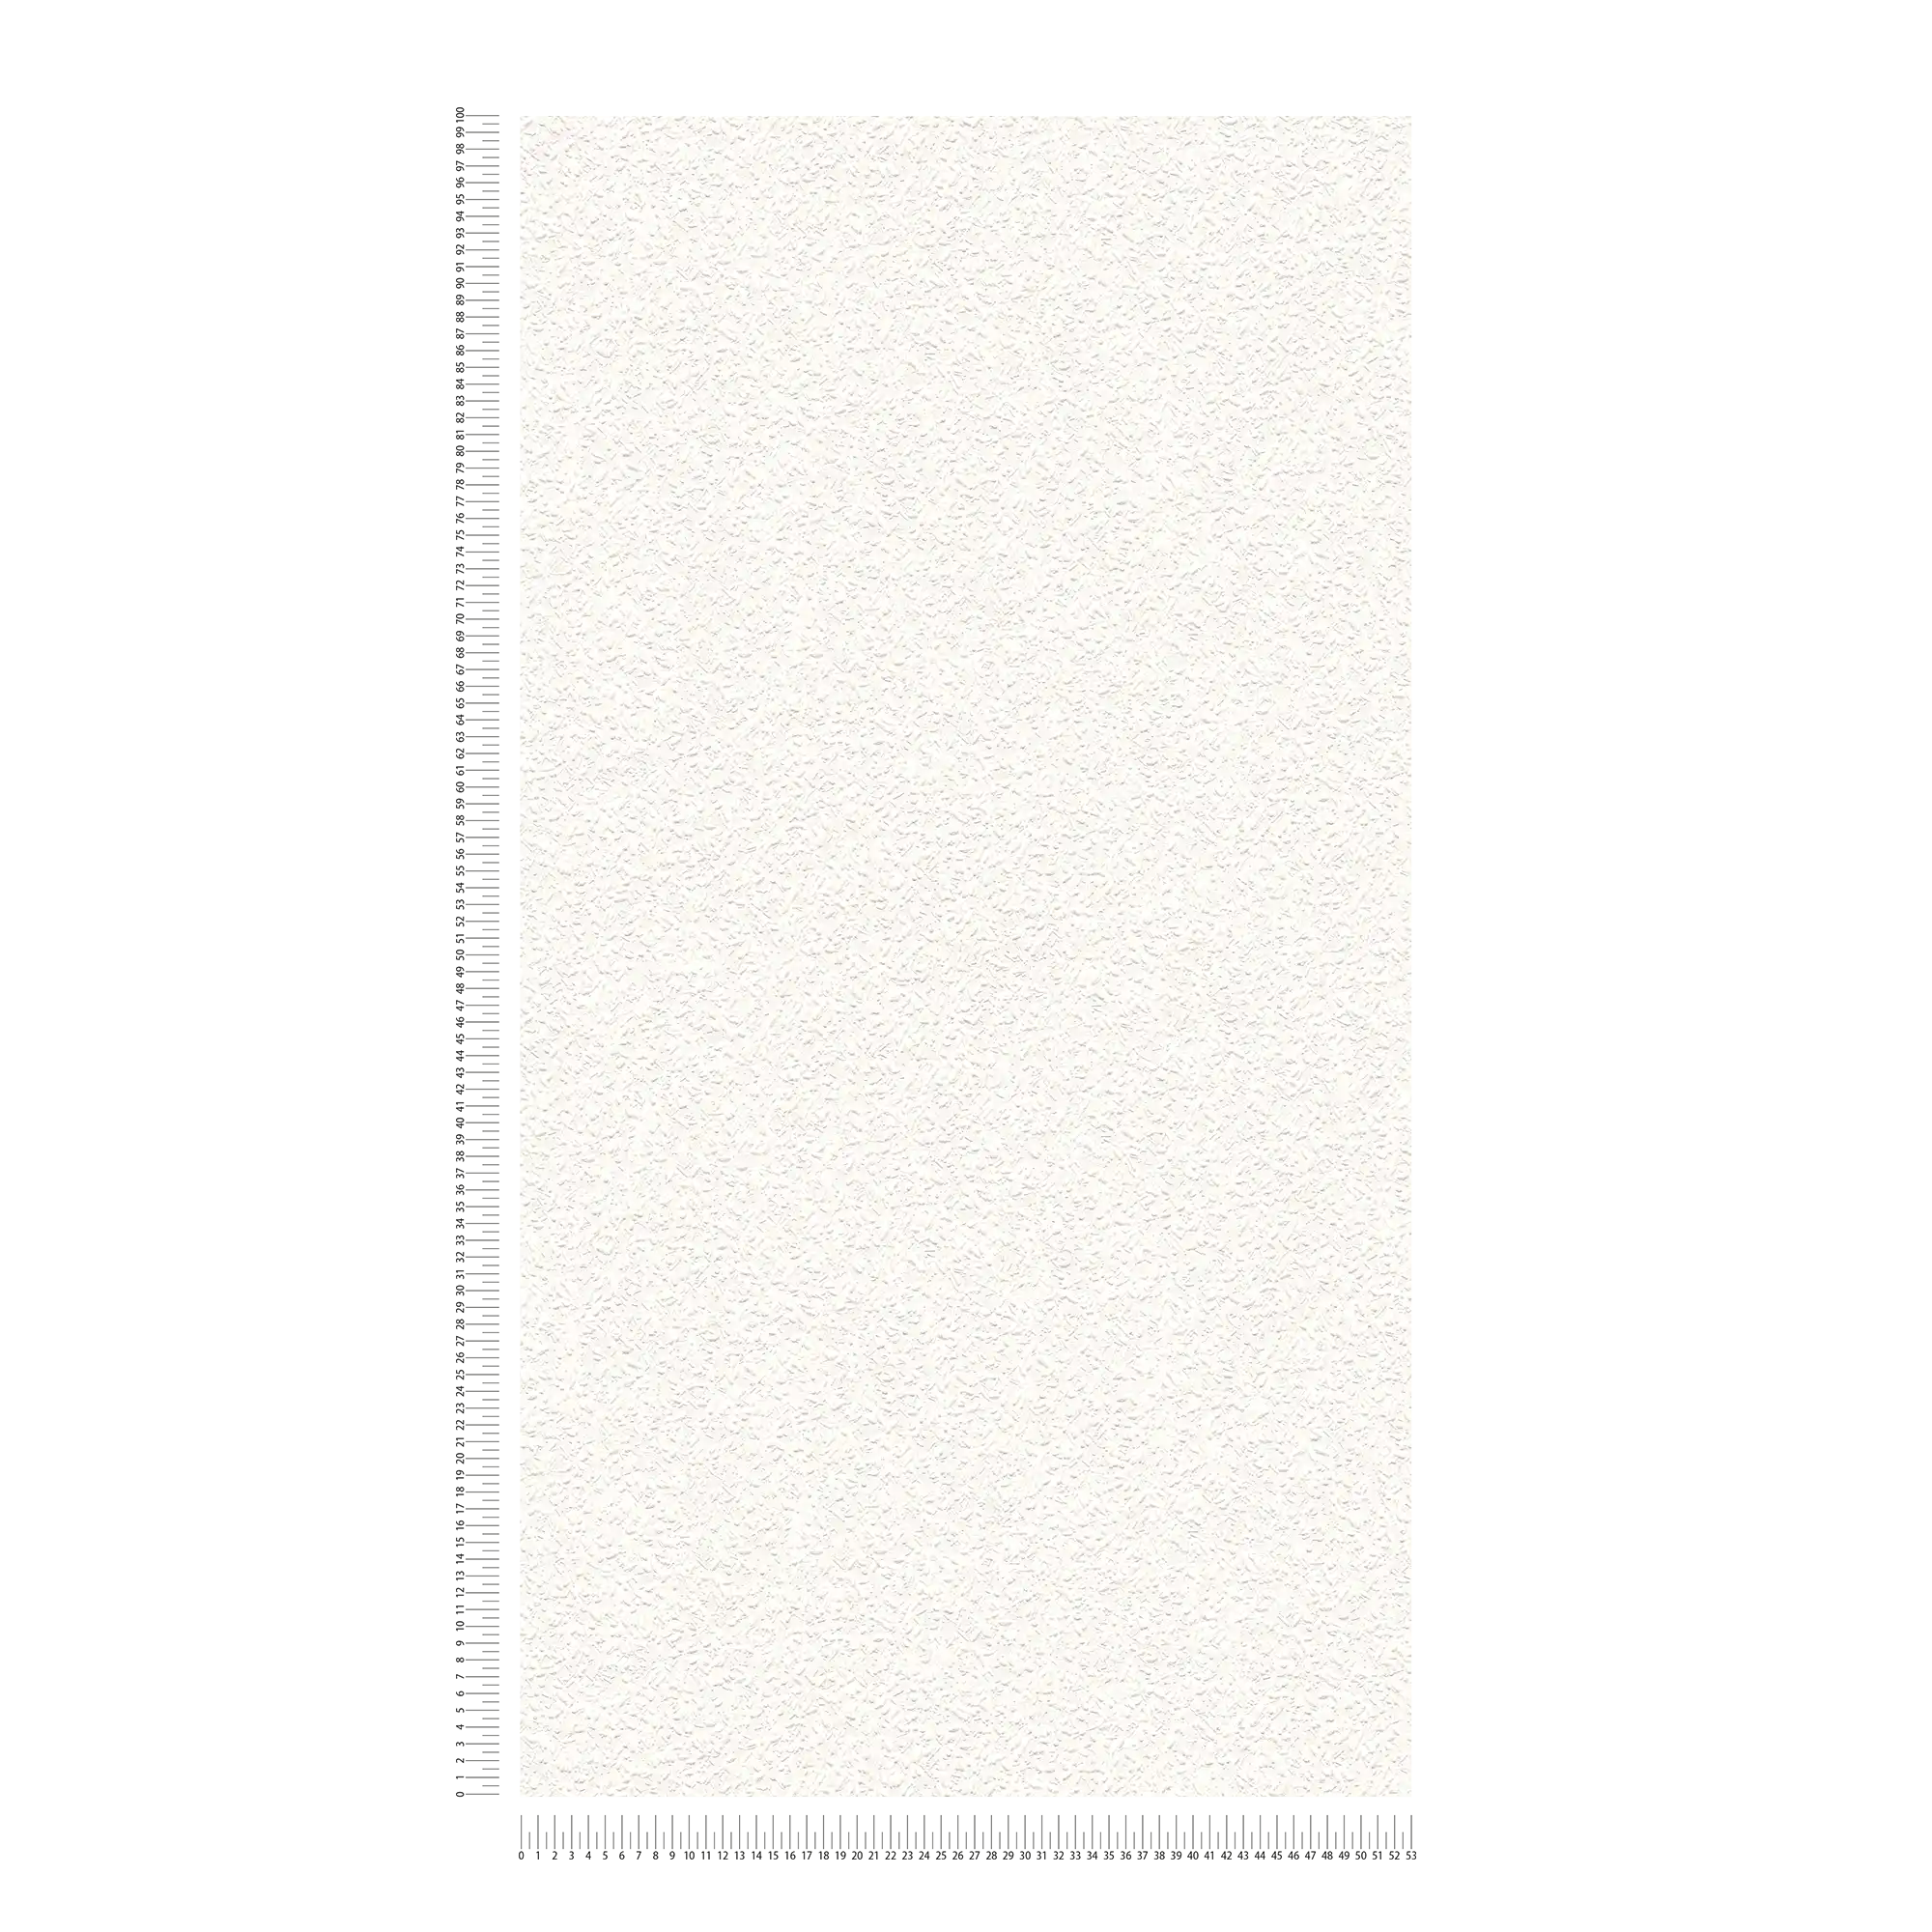             Papiertapete Raufaseroptik in Weiß mit Strukturmuster
        